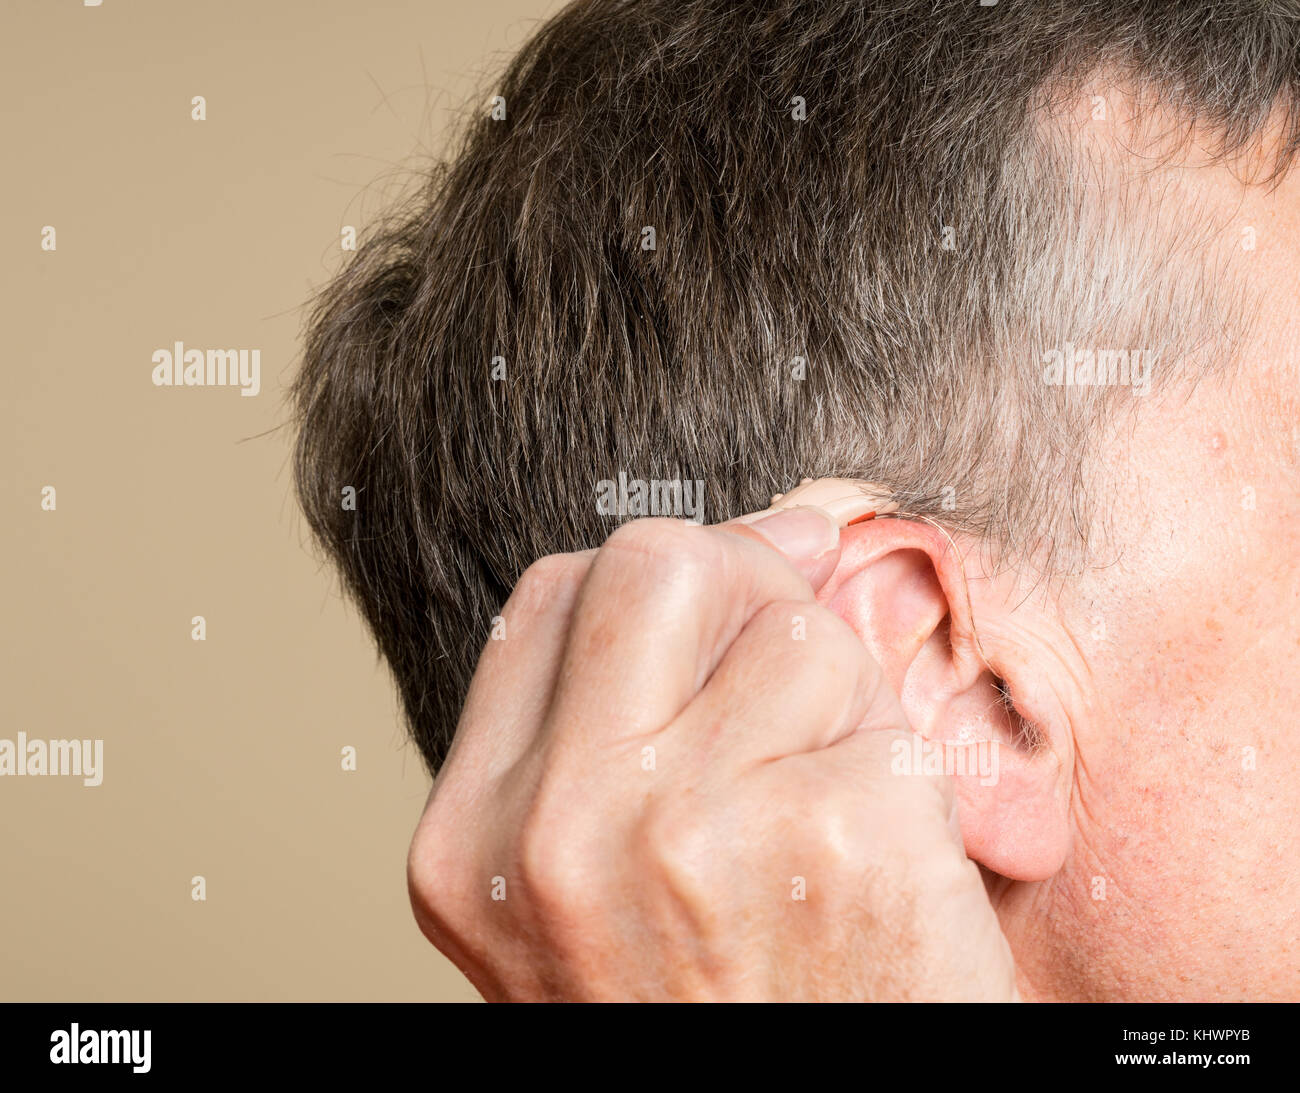 Gros plan d'une petite aide auditive moderne derrière l'oreille Photo Stock  - Alamy